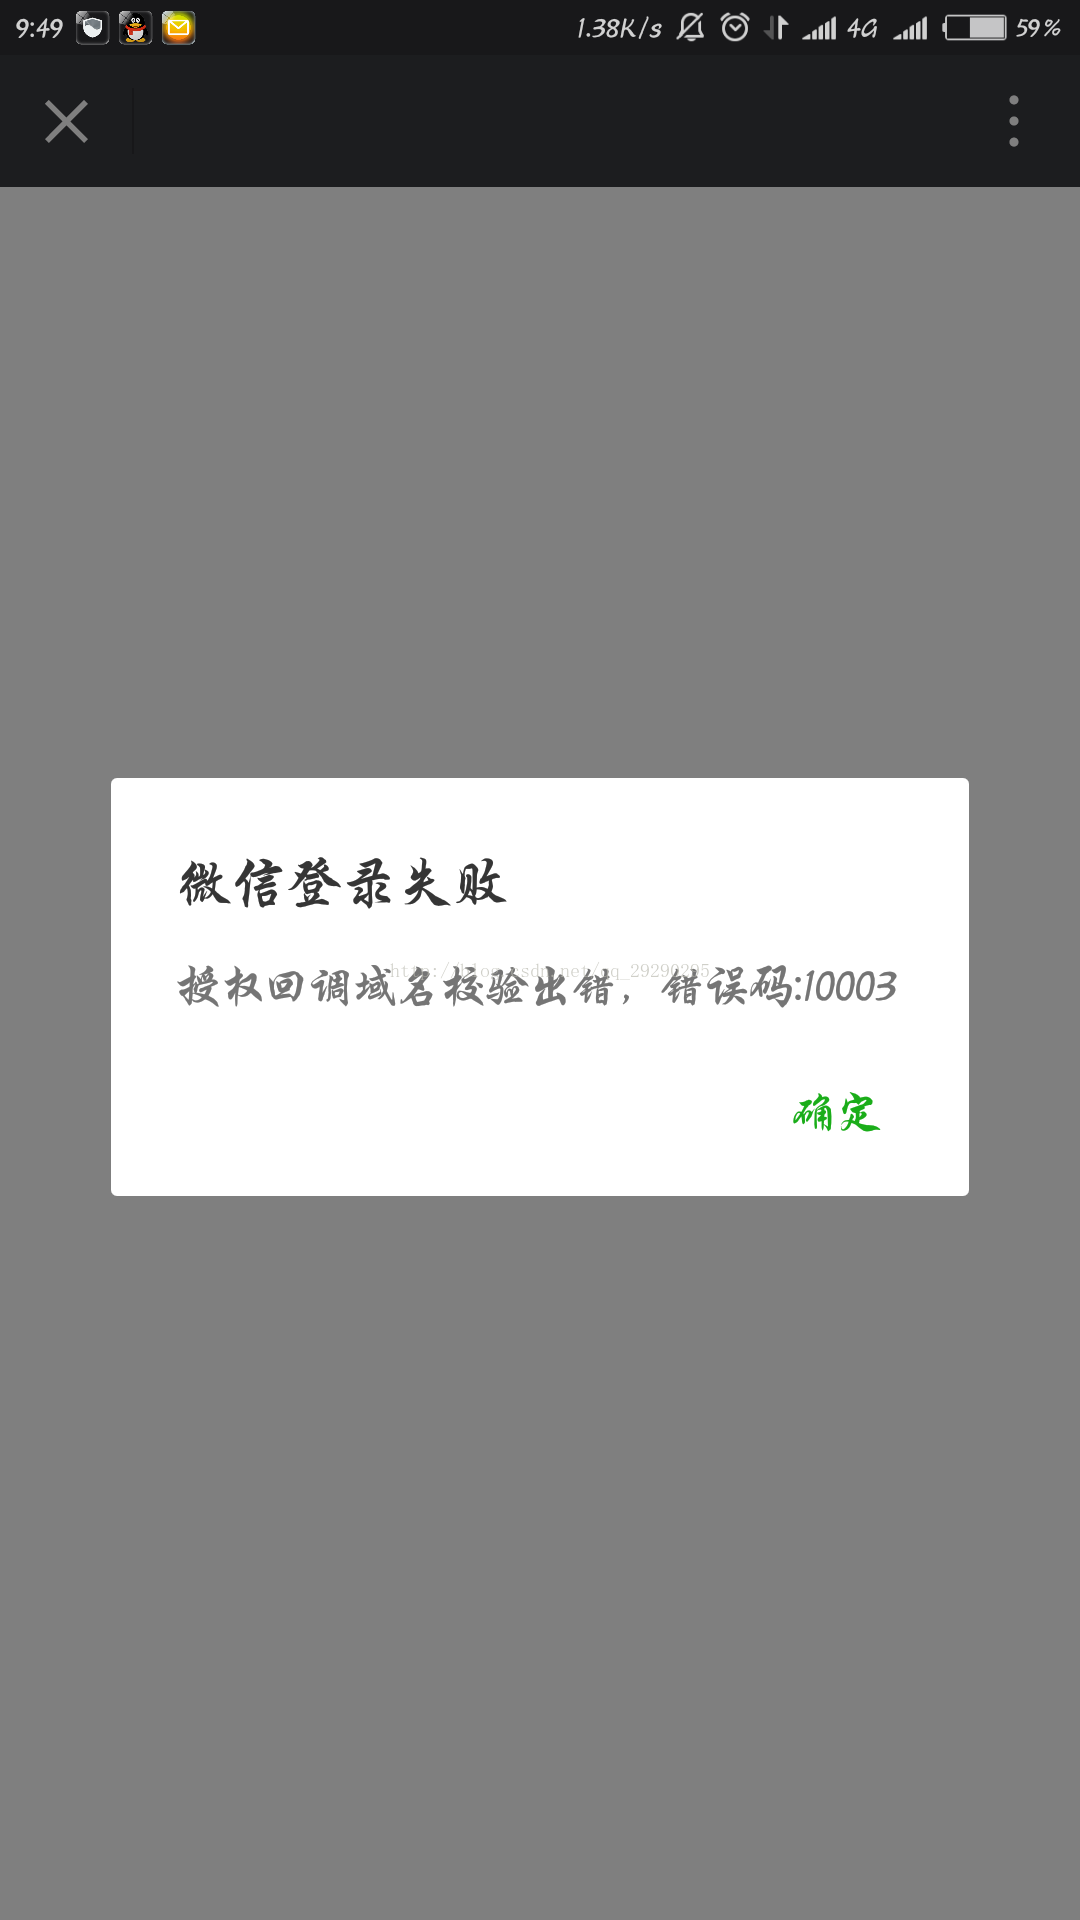 Win10版minecraft存档从中国版导入后显示等级导入失败，请问该怎么办？ - 知乎